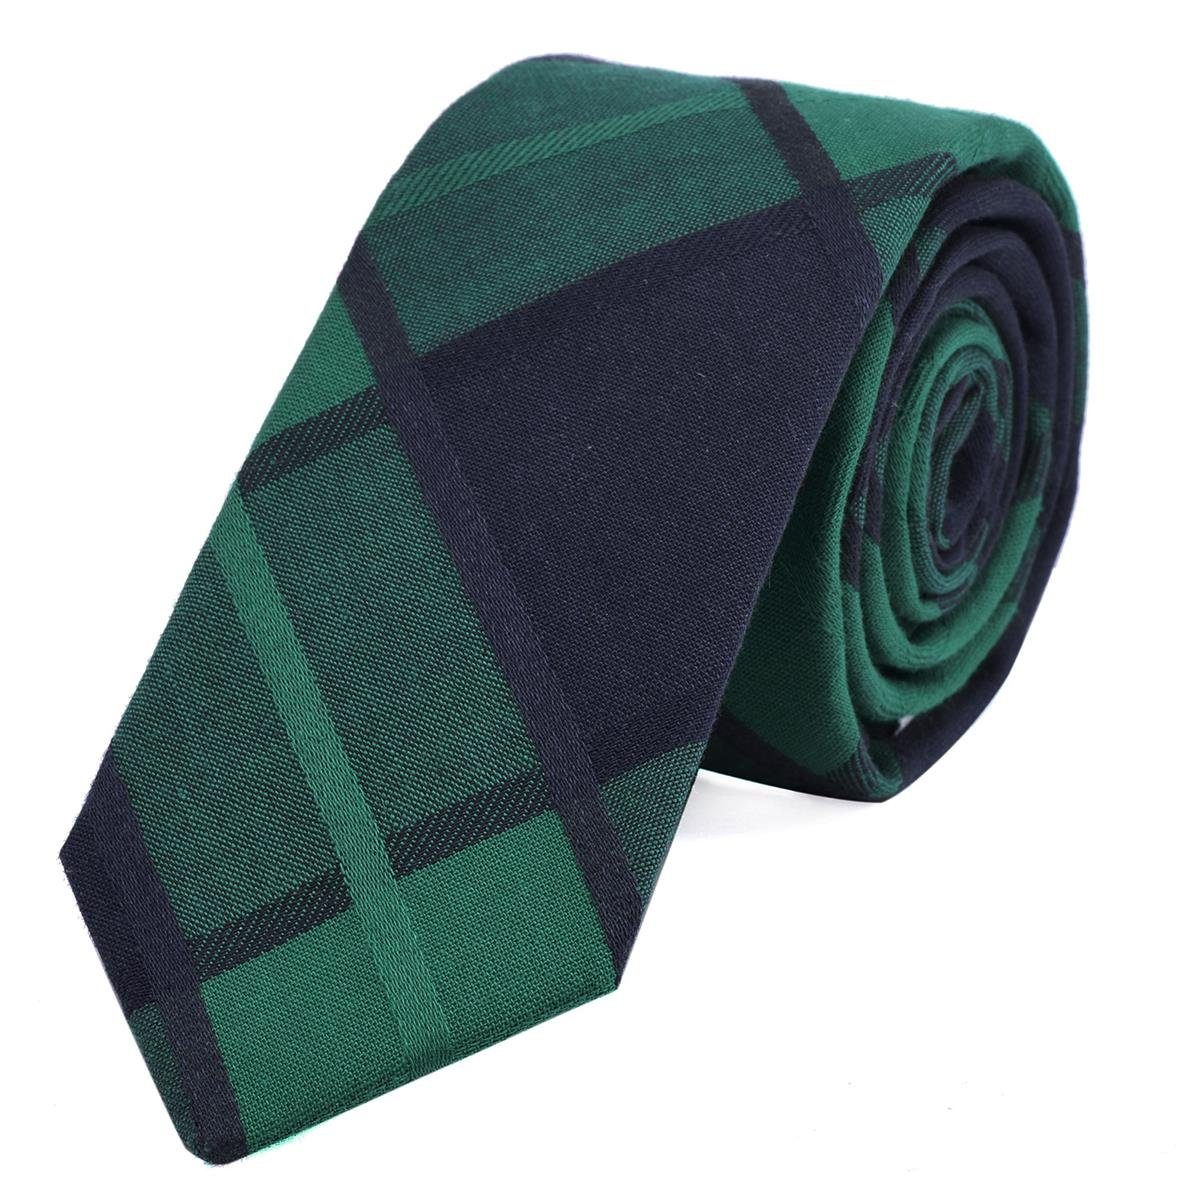 DonDon Krawatte Herren Krawatte 6 cm mit Karos oder Streifen (Packung, 1-St., 1x Krawatte) Baumwolle, kariert oder gestreift, für Büro oder festliche Veranstaltungen grün-blau kariert